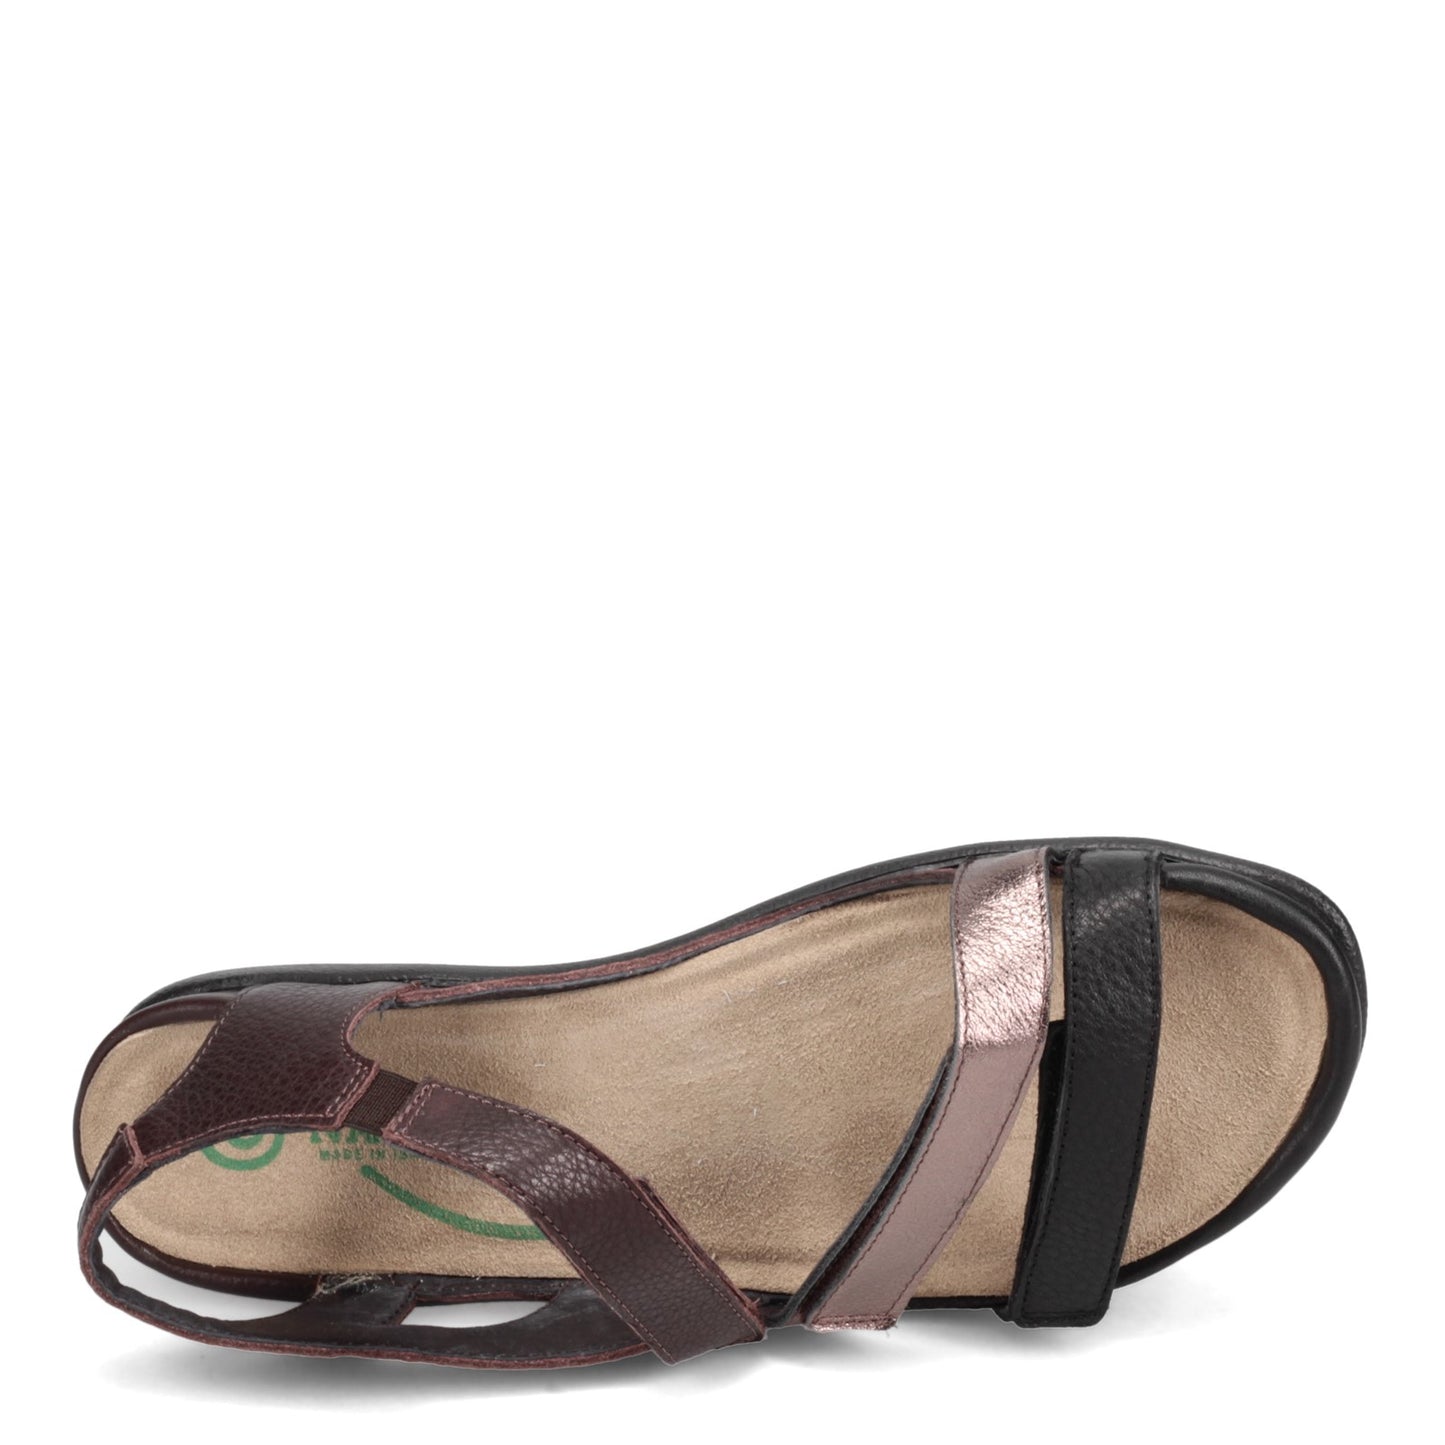 Peltz Shoes  Women's Naot Whetu Sandal BLACK 11201-NSW